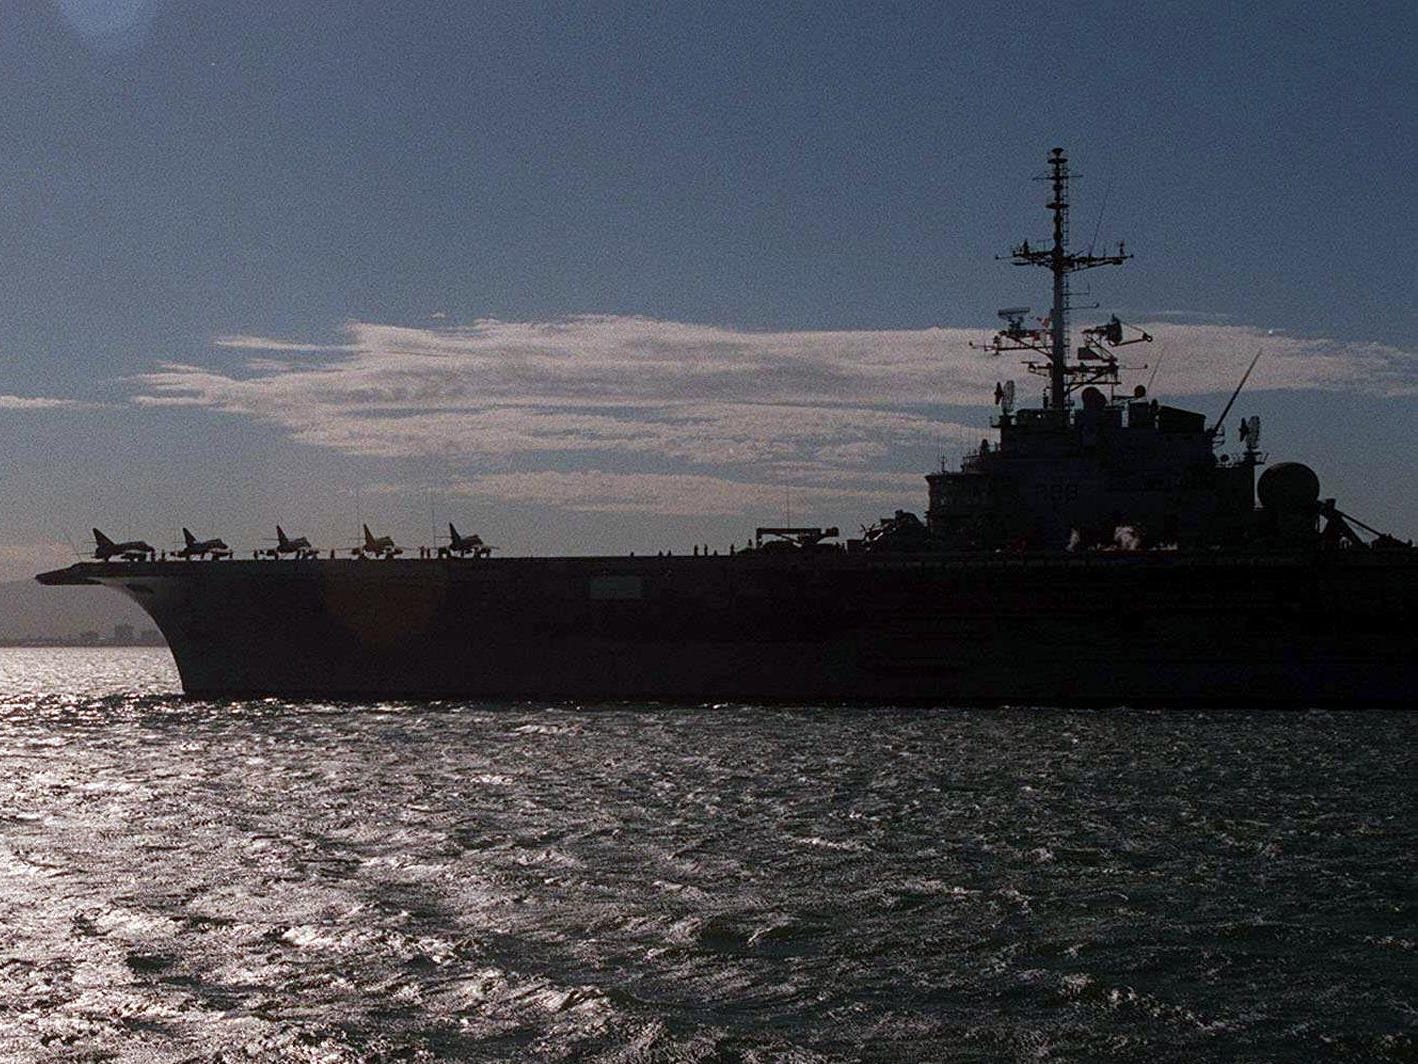 Fünf von 12 Super Etandard-Jagdbombern, die an Bord des französischen Flugzeugträgers Foch transportiert werden, sind gegen die Morgensonne zu sehen, als die Foch am 27. März 2000 auf dem Weg nach Rio de Janeiro aus dem Hafen von Kapstadt ausläuft.